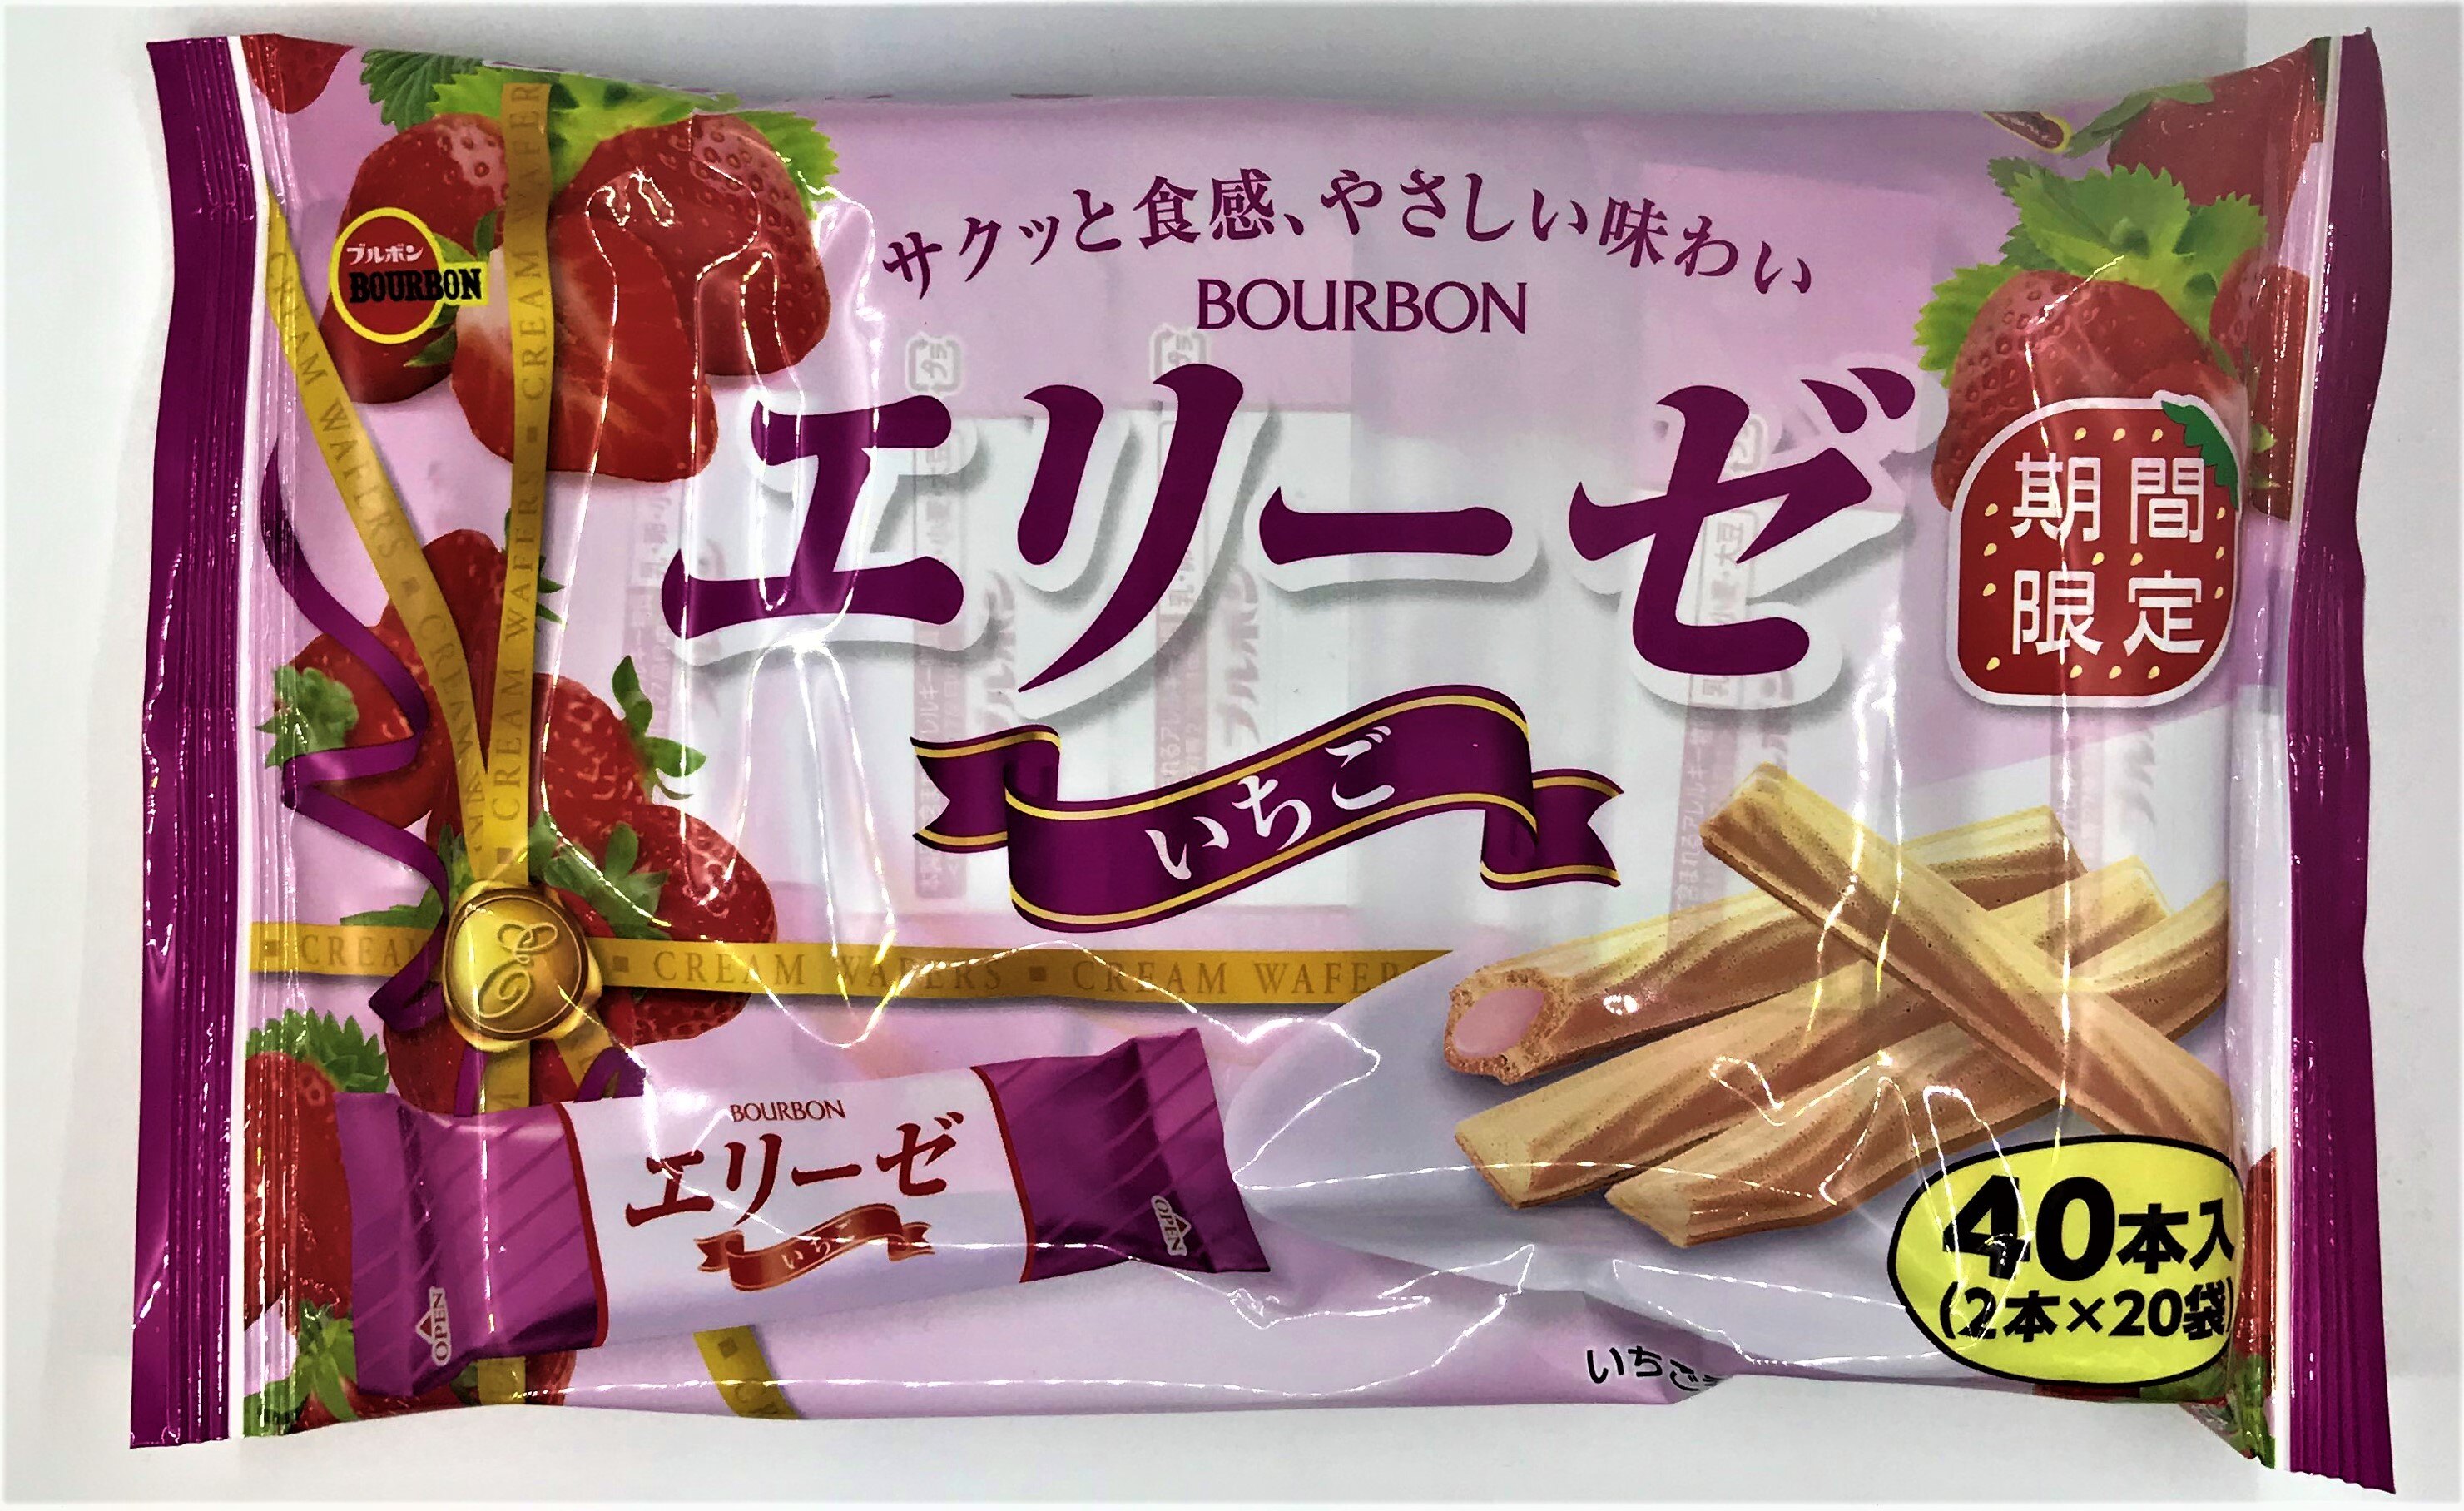 [哈日小丸子]北日本愛麗絲威化棒-草莓奶油風味(2入*20袋)